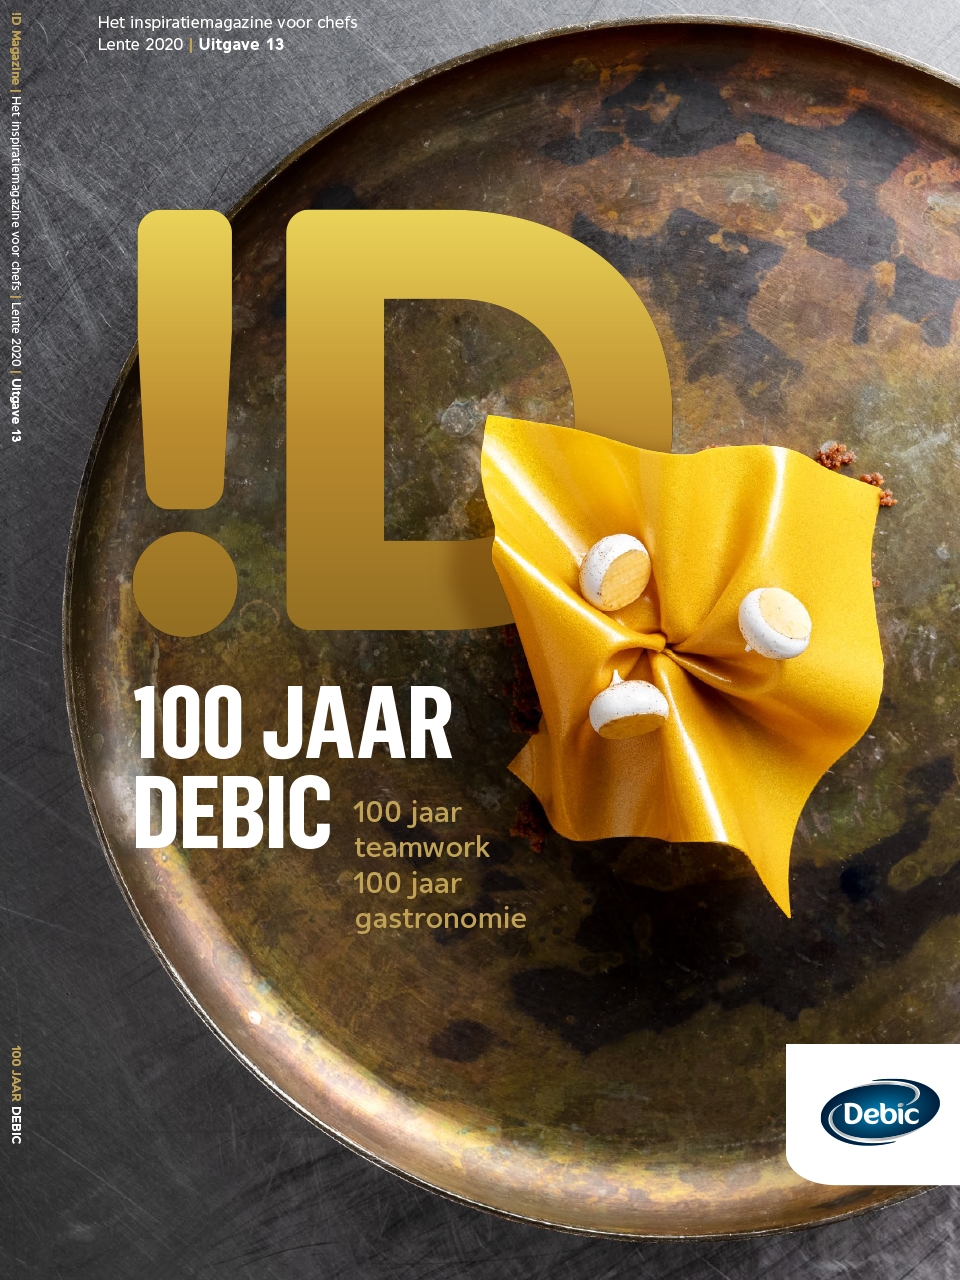 debic 100 jaar | Debic